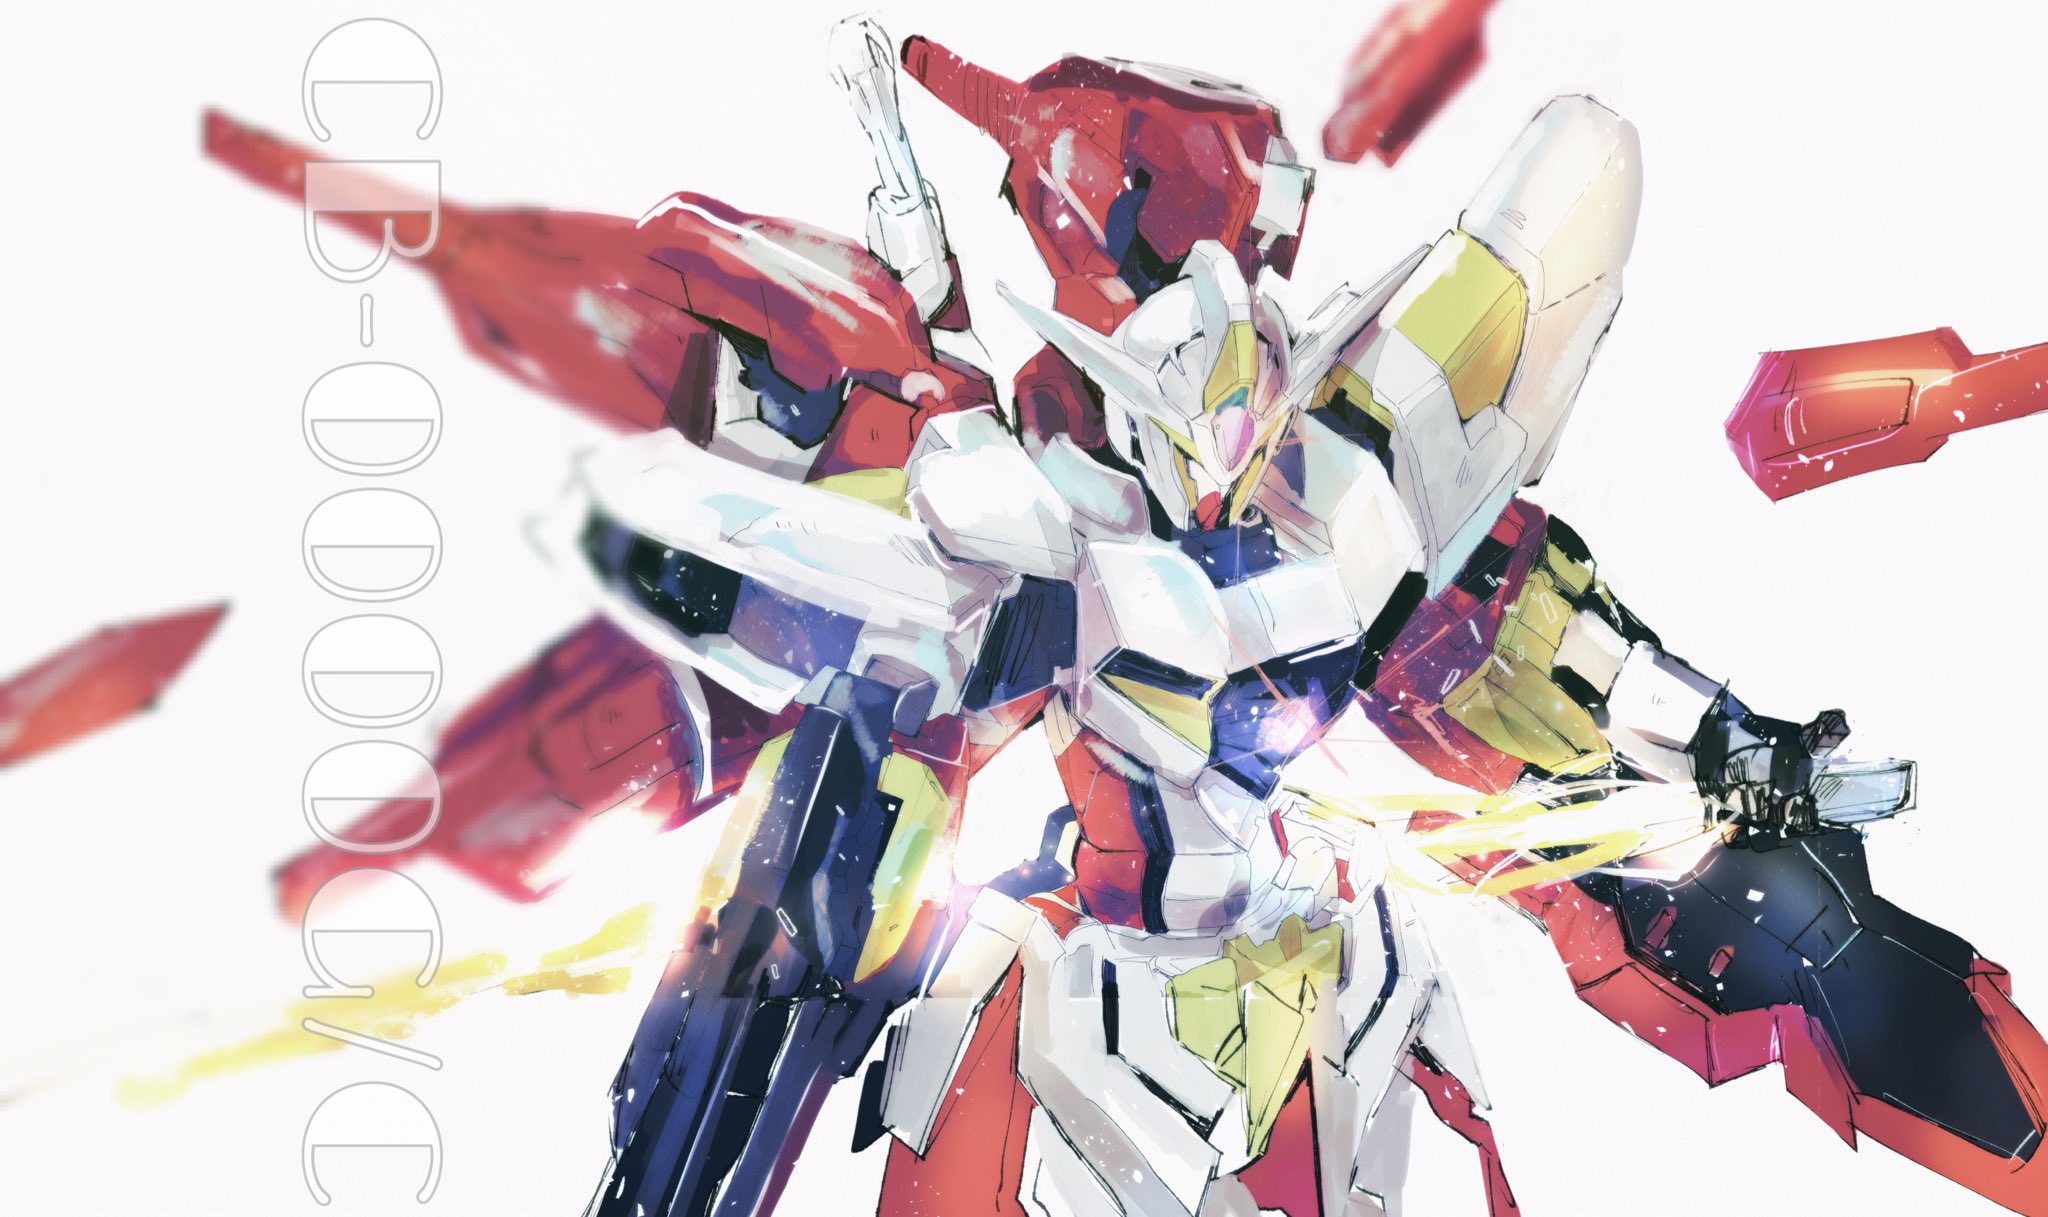 Anime 2048x1217 Reborns Gundam anime mechs Super Robot Taisen Gundam Mobile Suit Gundam 00 artwork digital art fan art